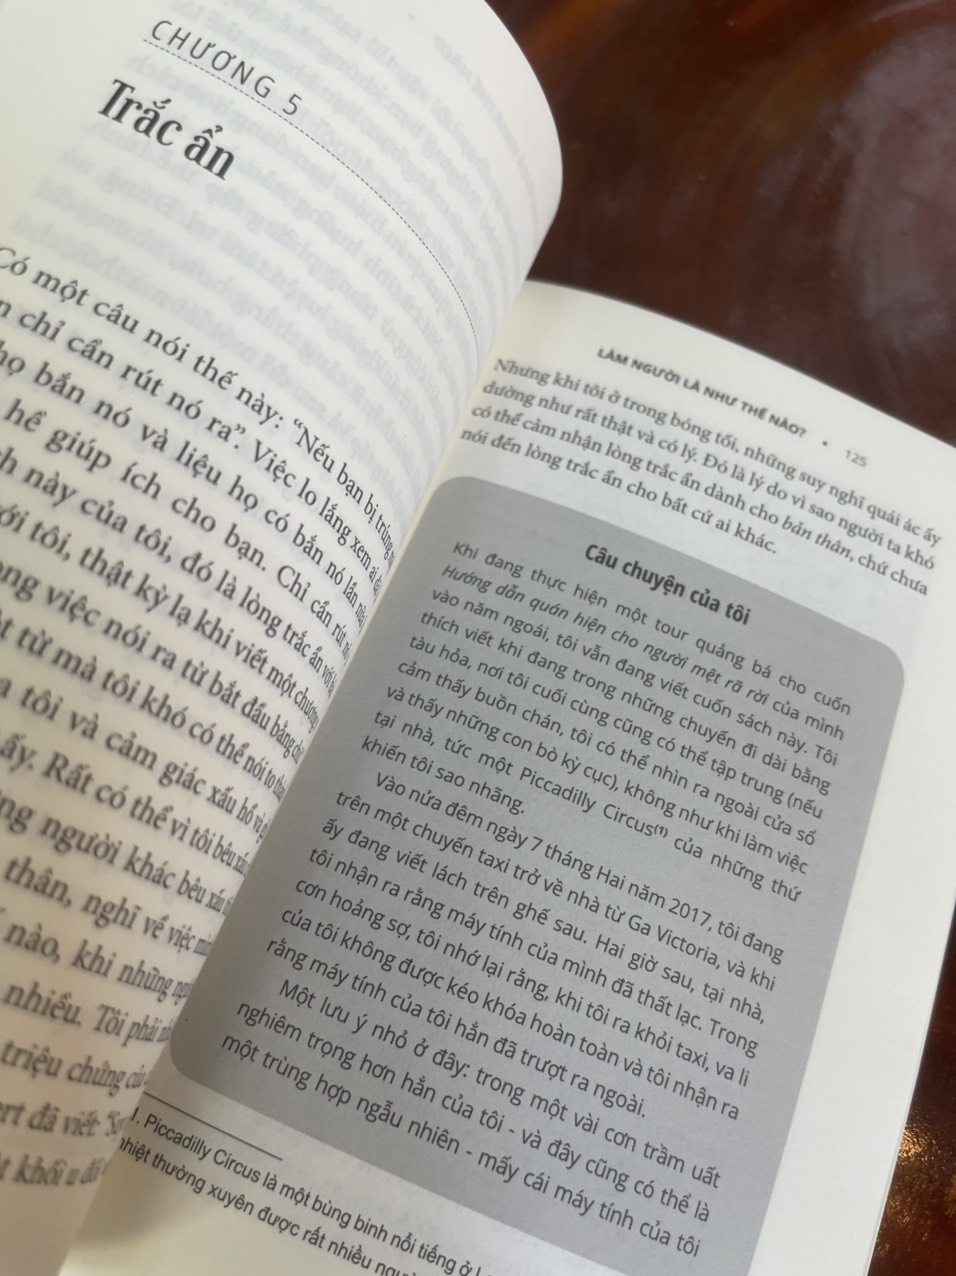 LÀM NGƯỜI LÀ NHƯ THẾ NÀO? How To Be Human: The Manual – Ruby Wax – Hoàng Đức Long dịch – Nhã Nam – NXB Thế Giới (bìa mềm)